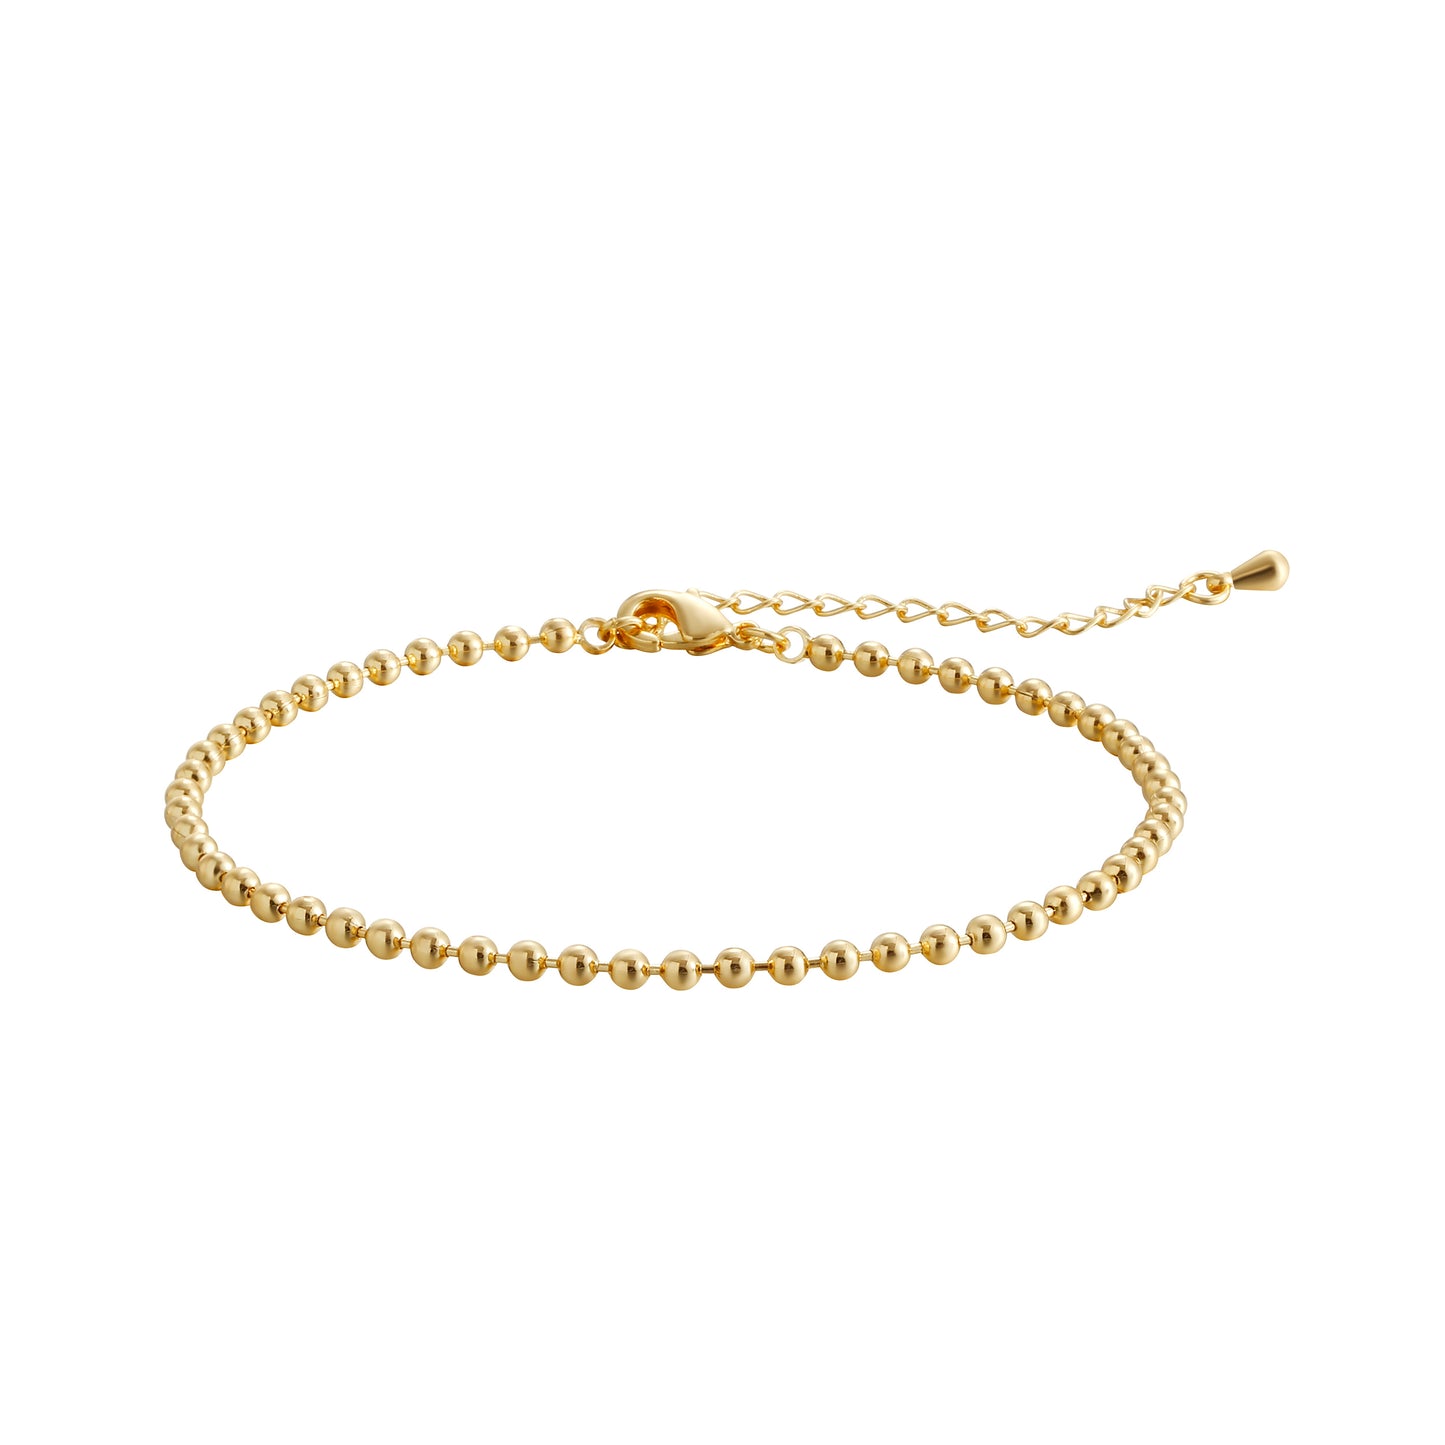 TASISO 14k Gold Plated Dainty Beaded Ball Link Bracelet